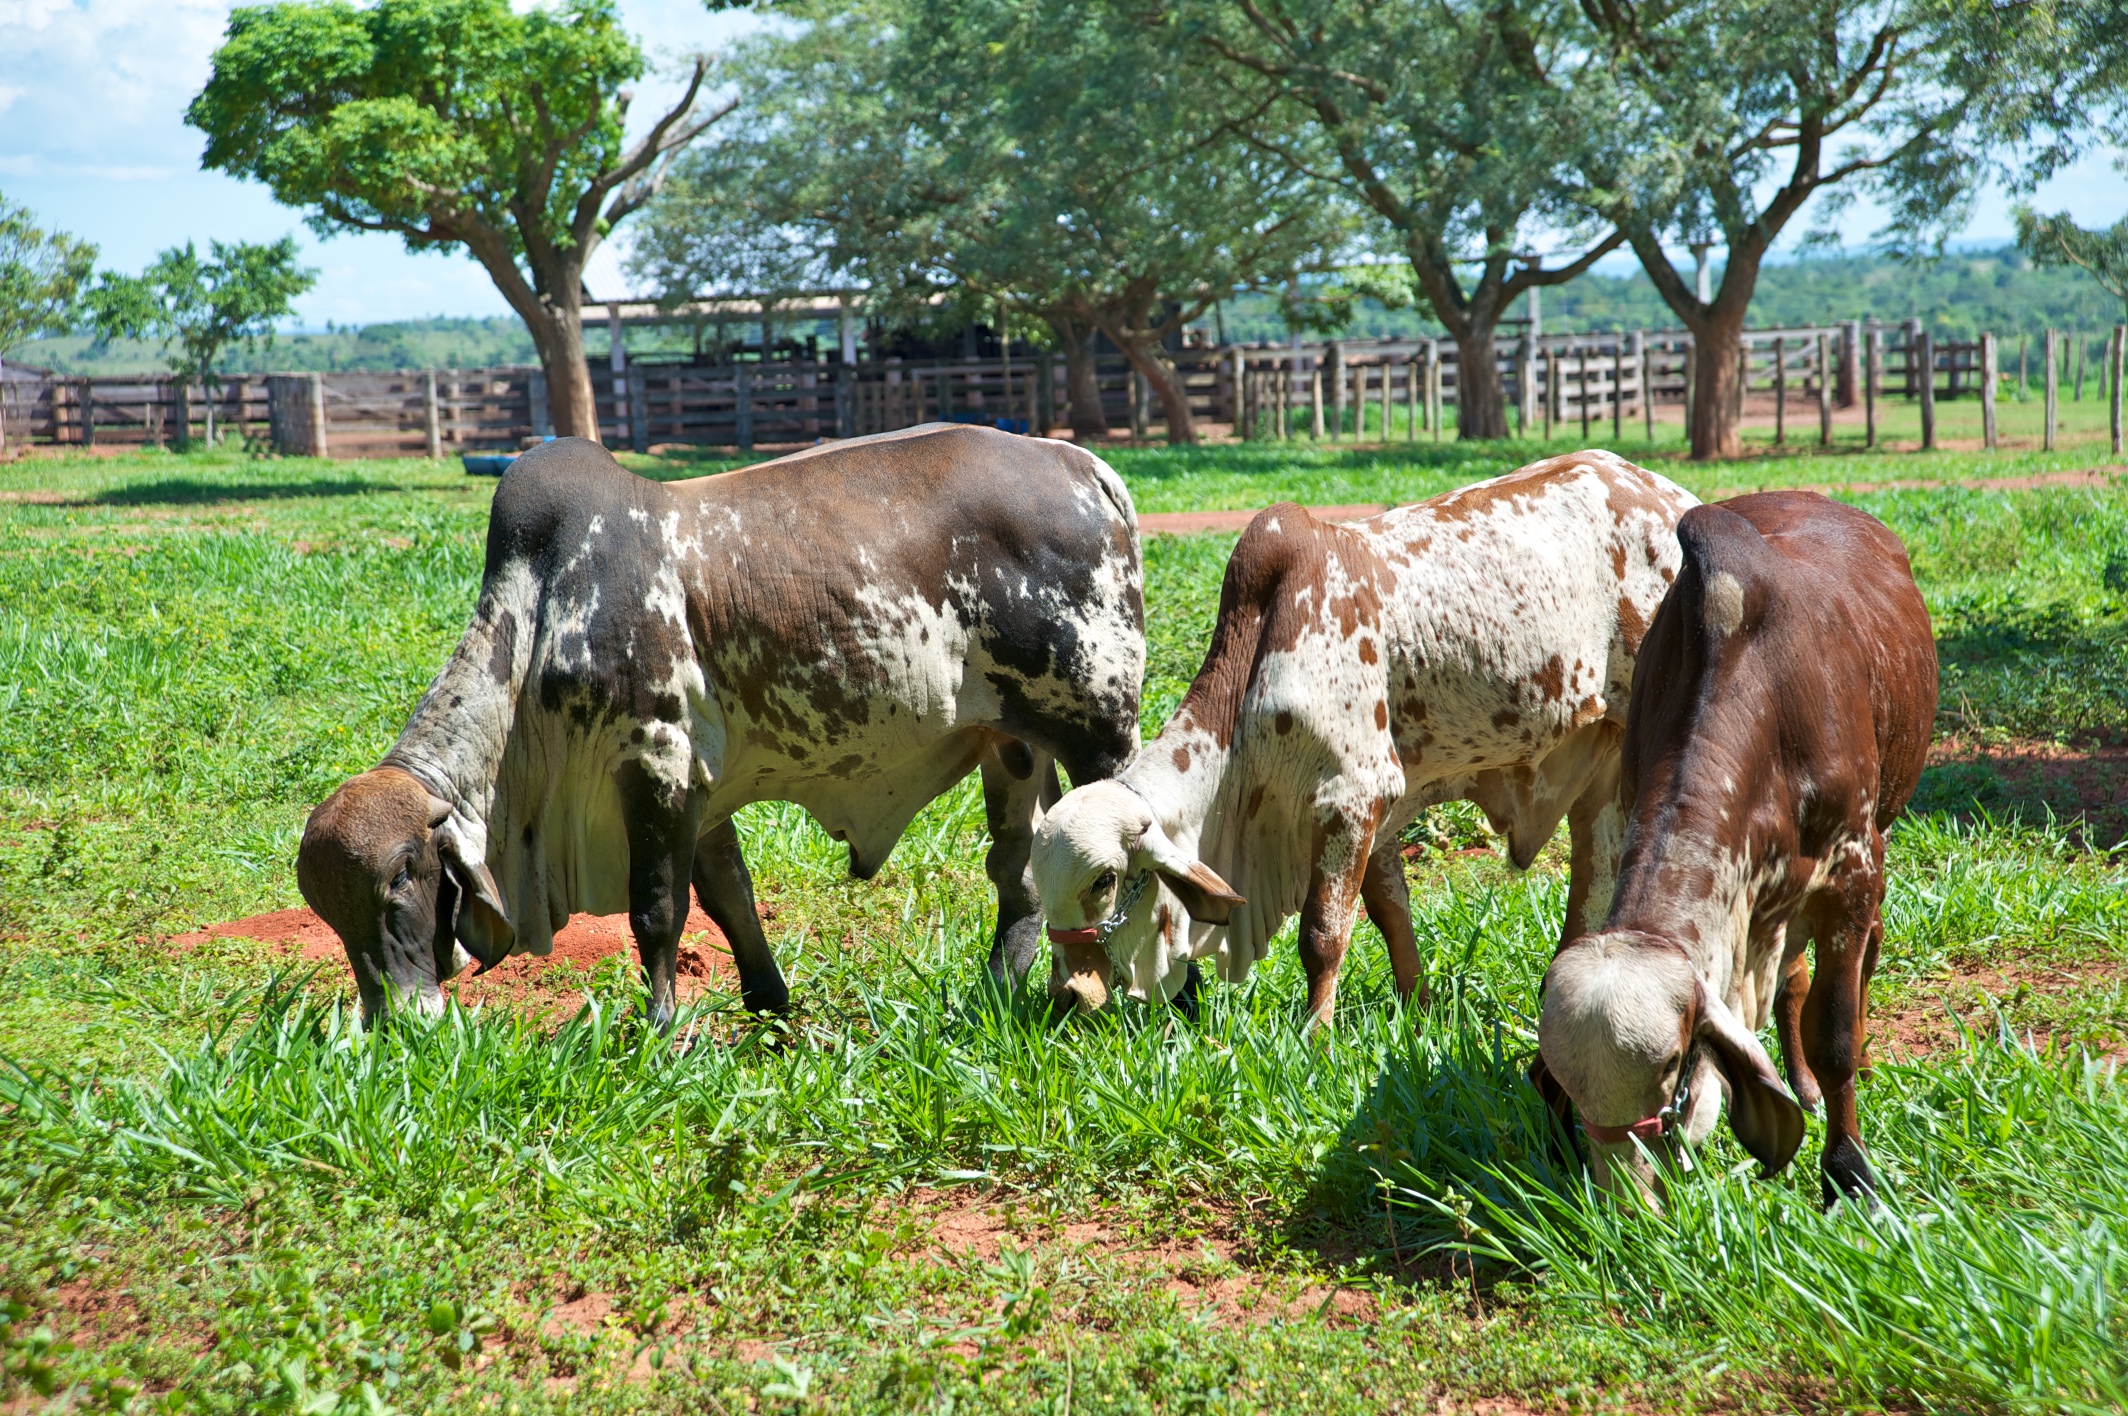  Santa Getrudis cattle, Prata, near Bonito, Brazil 